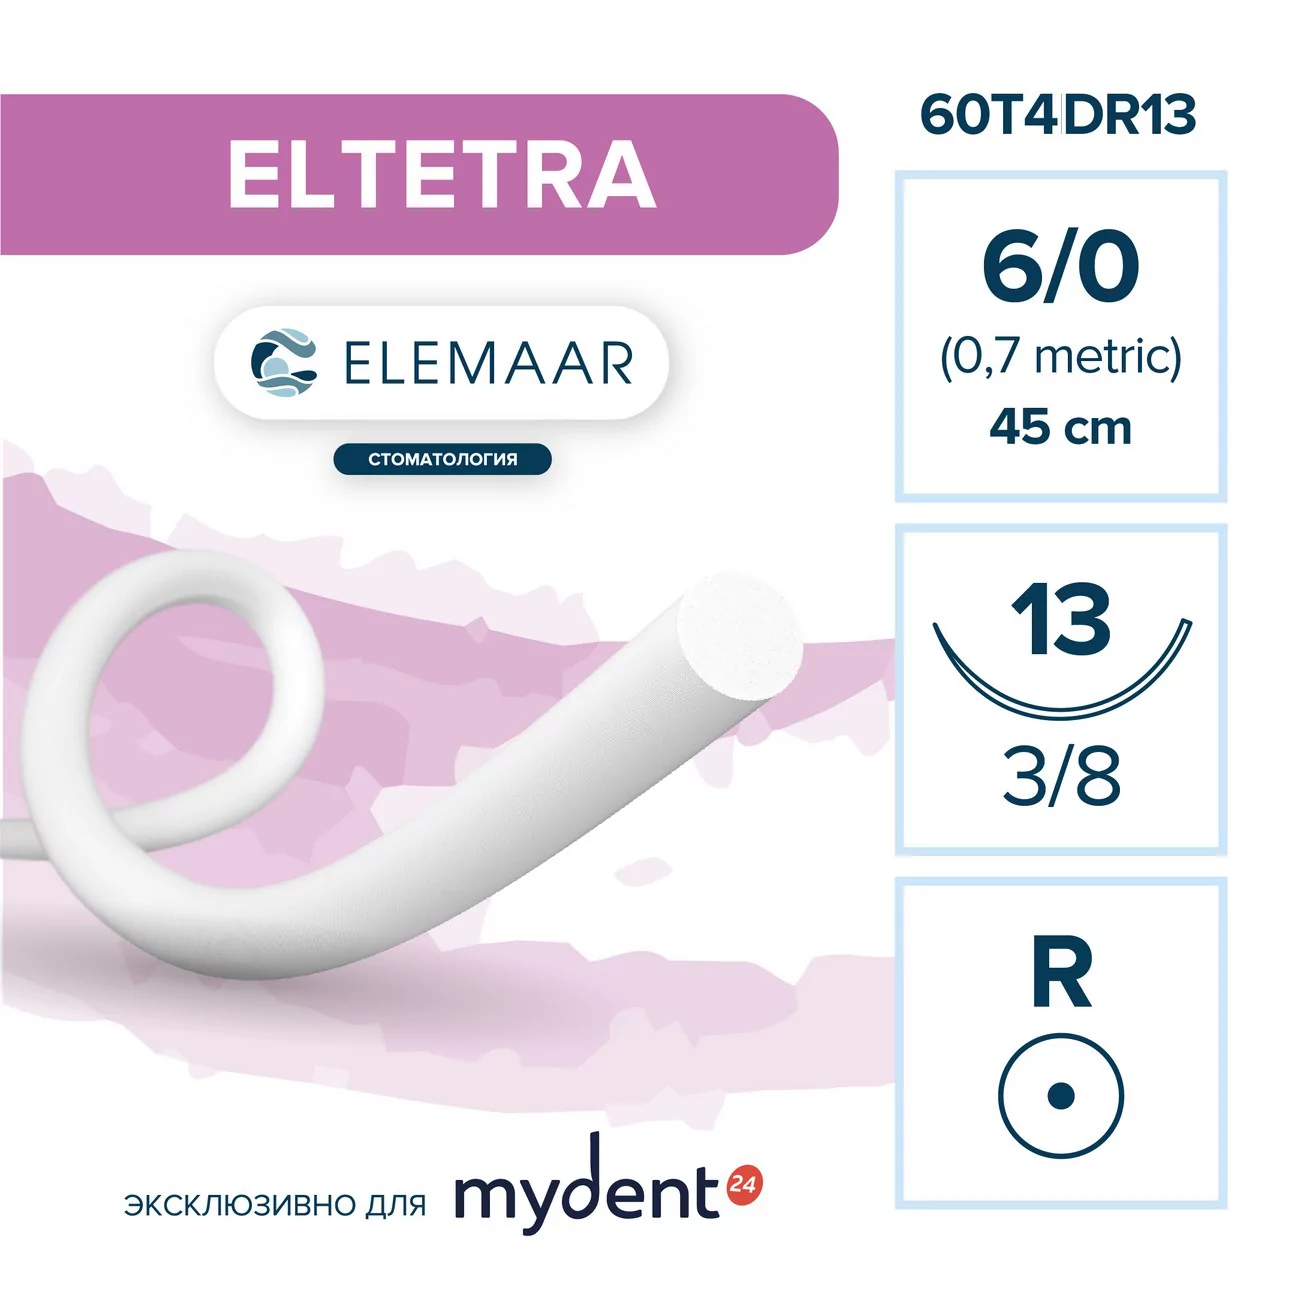 Шовный материал ELTETRA 6/0 (12 шт, 45 см, 3/8, 13 мм, колющая)